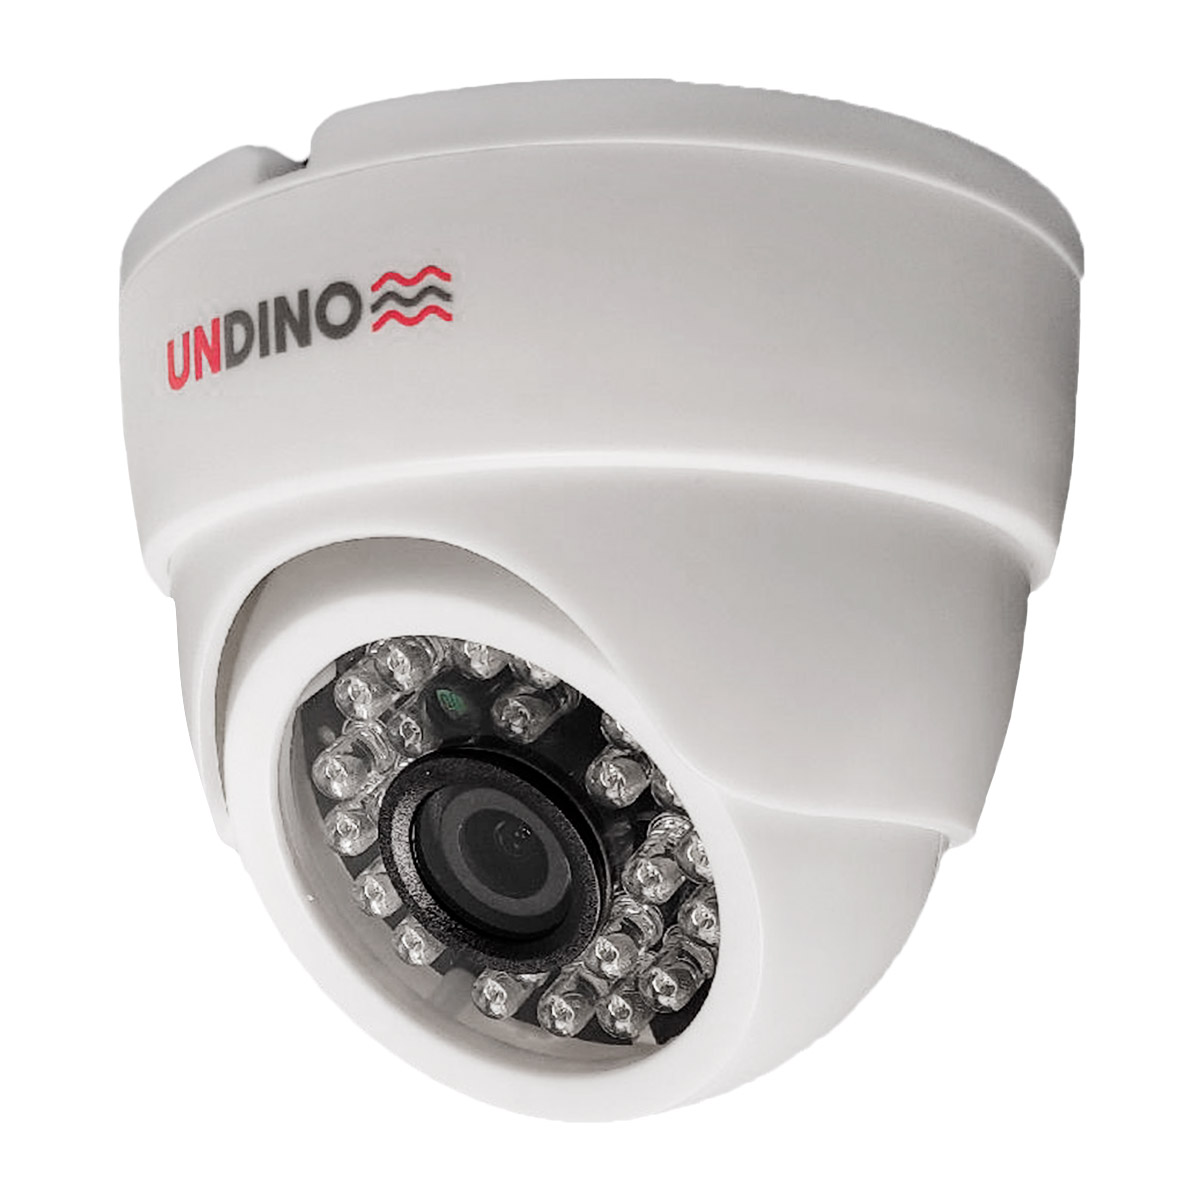 Купольная камера видеонаблюдения IP 2Мп Undino UD-ED02IP цифровая с POE питанием intelligent arlight панель dali 223 1g 4sc in bus только сцены arlight